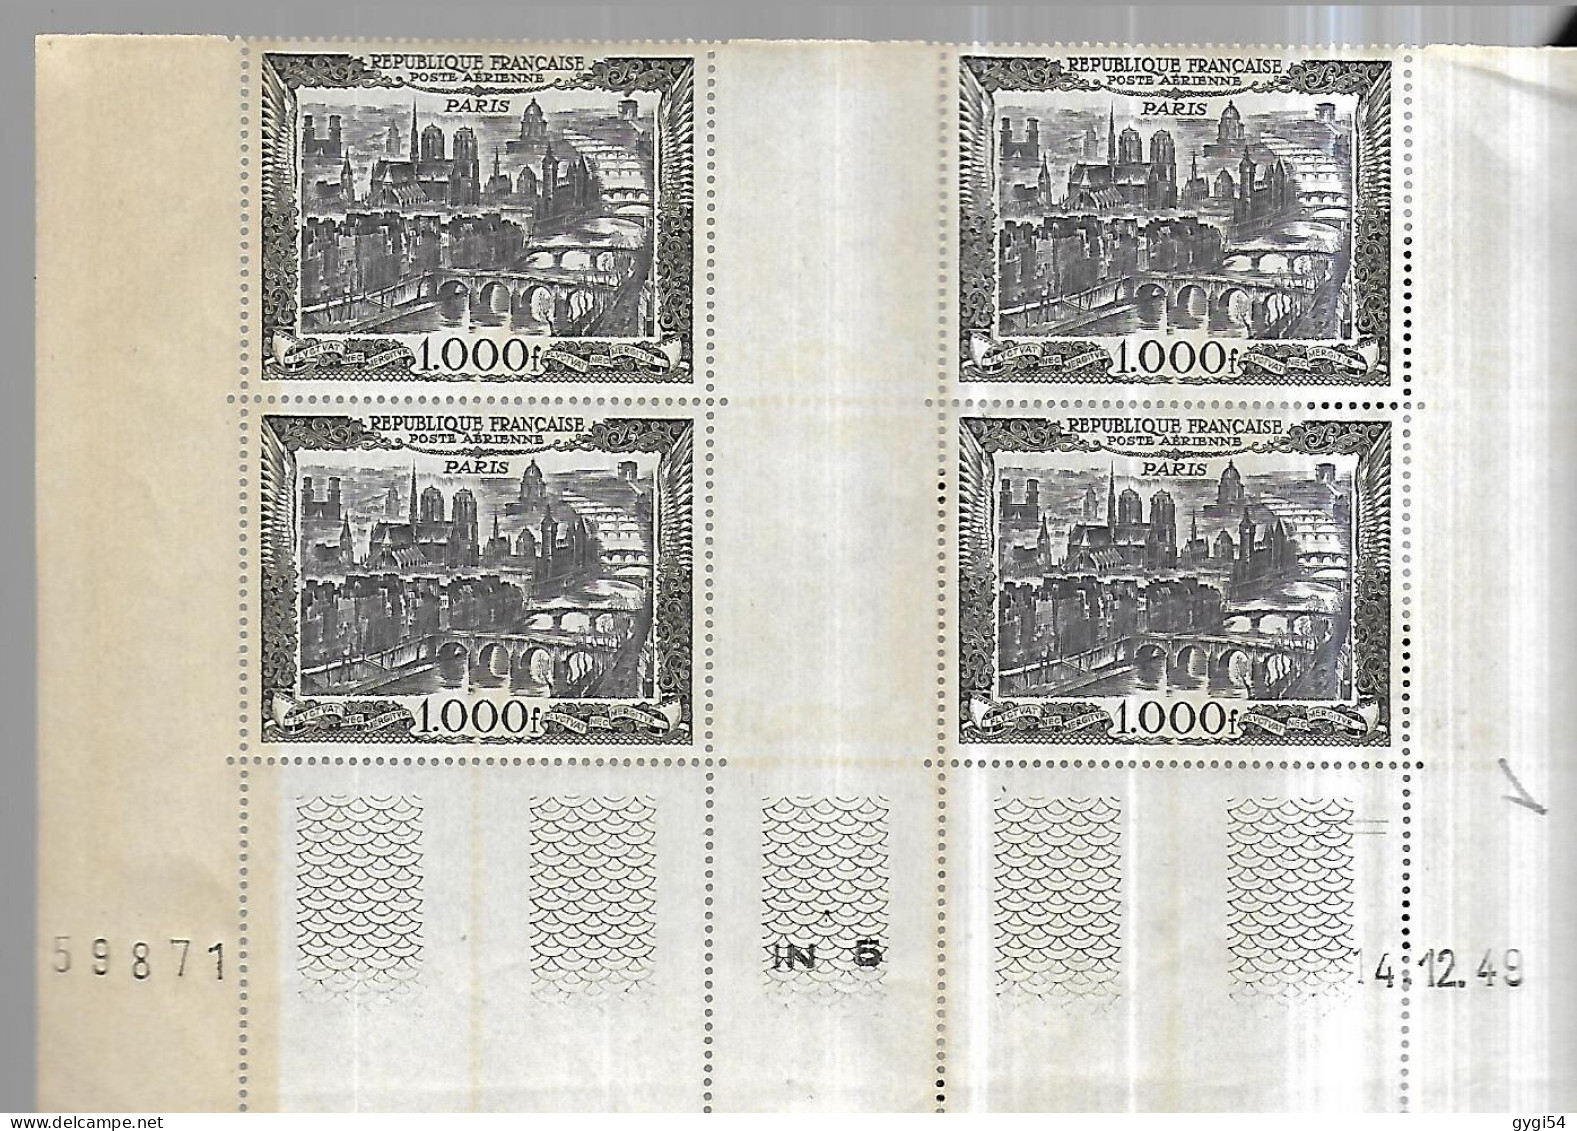 FRANCE Poste Aérienne  Coin Daté Du 04 12 1949  Cat Yt 29  N** MNH BORD  DE 2 TP JAUNIS - Poste Aérienne